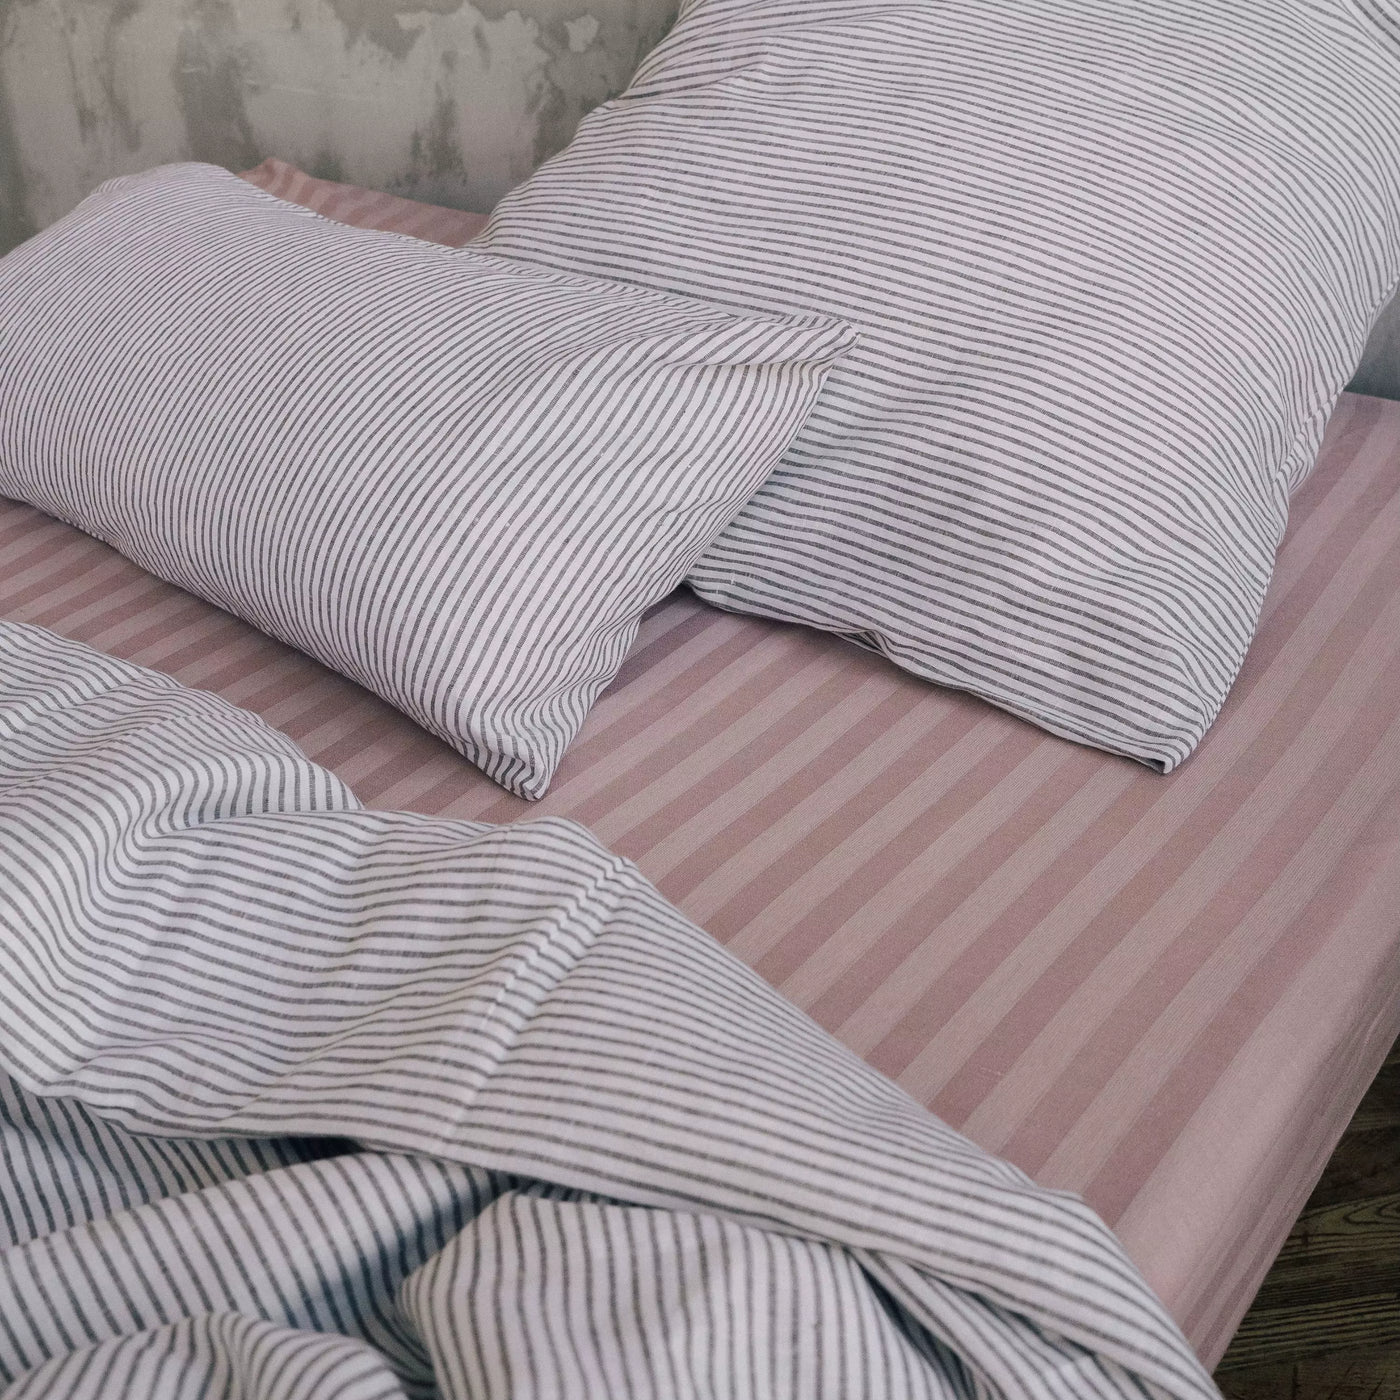 Acquista il set di biancheria da letto in lino naturale 135x200 bianco con strisce nere 3